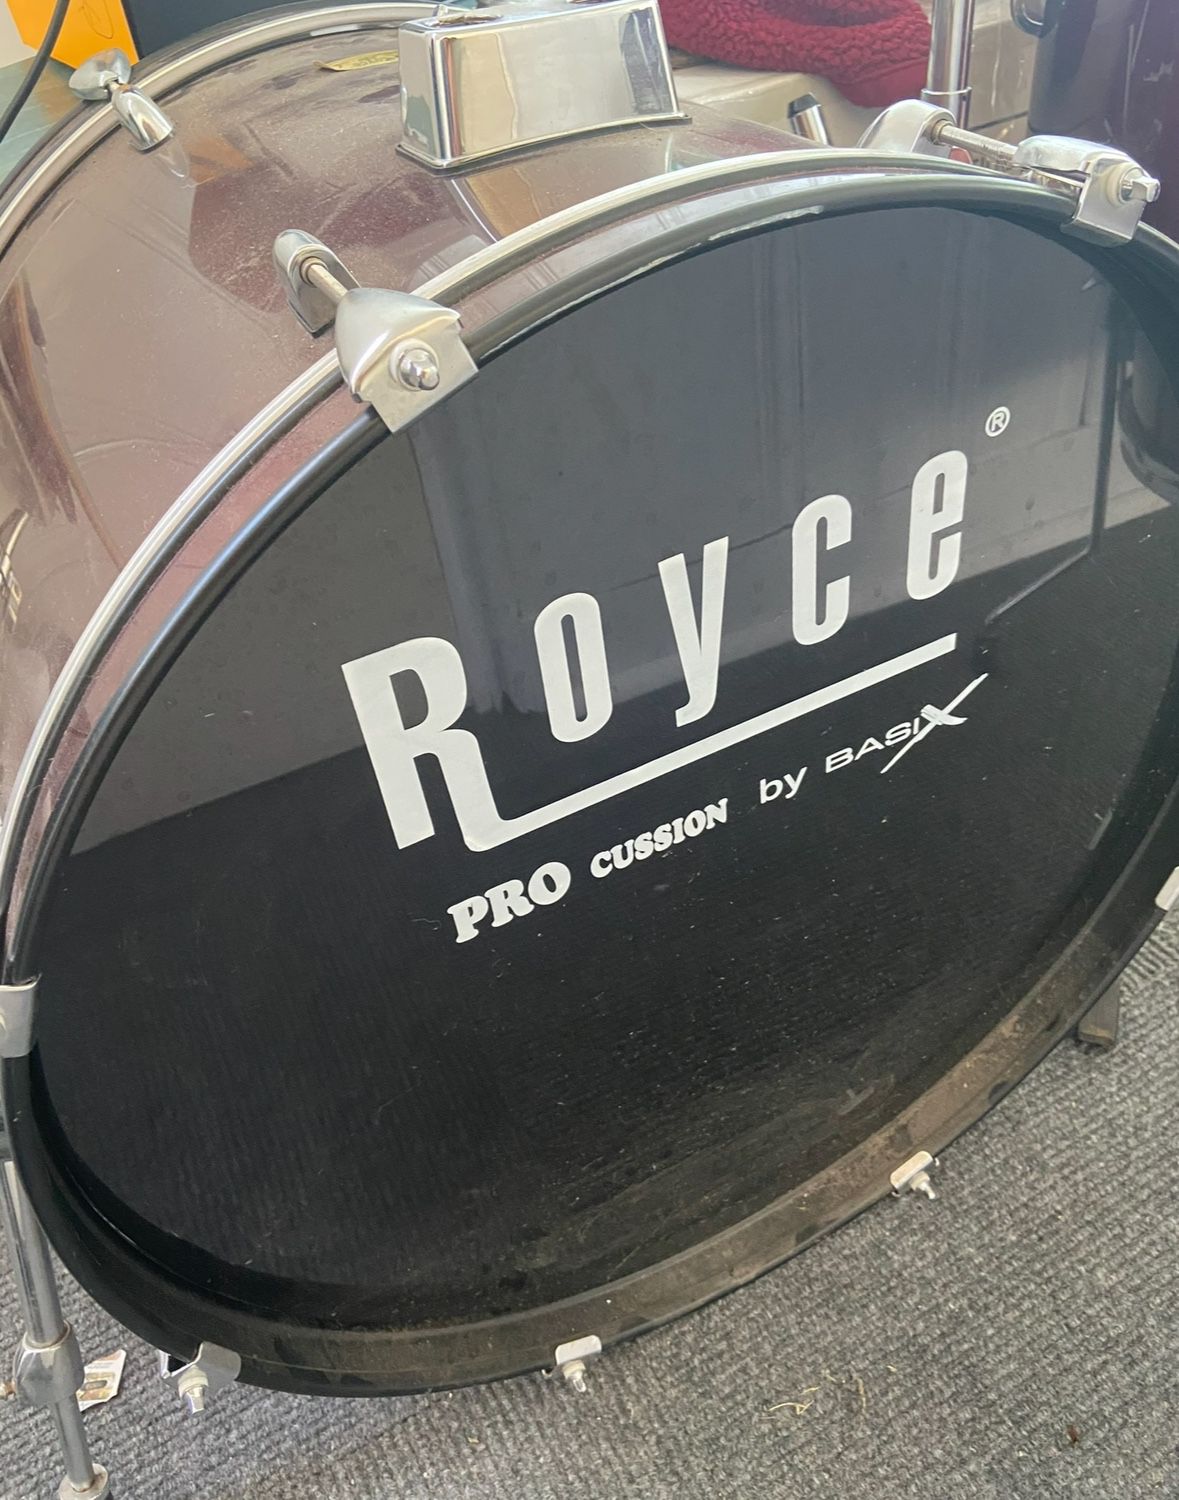 Royce Full Size Drum Kit